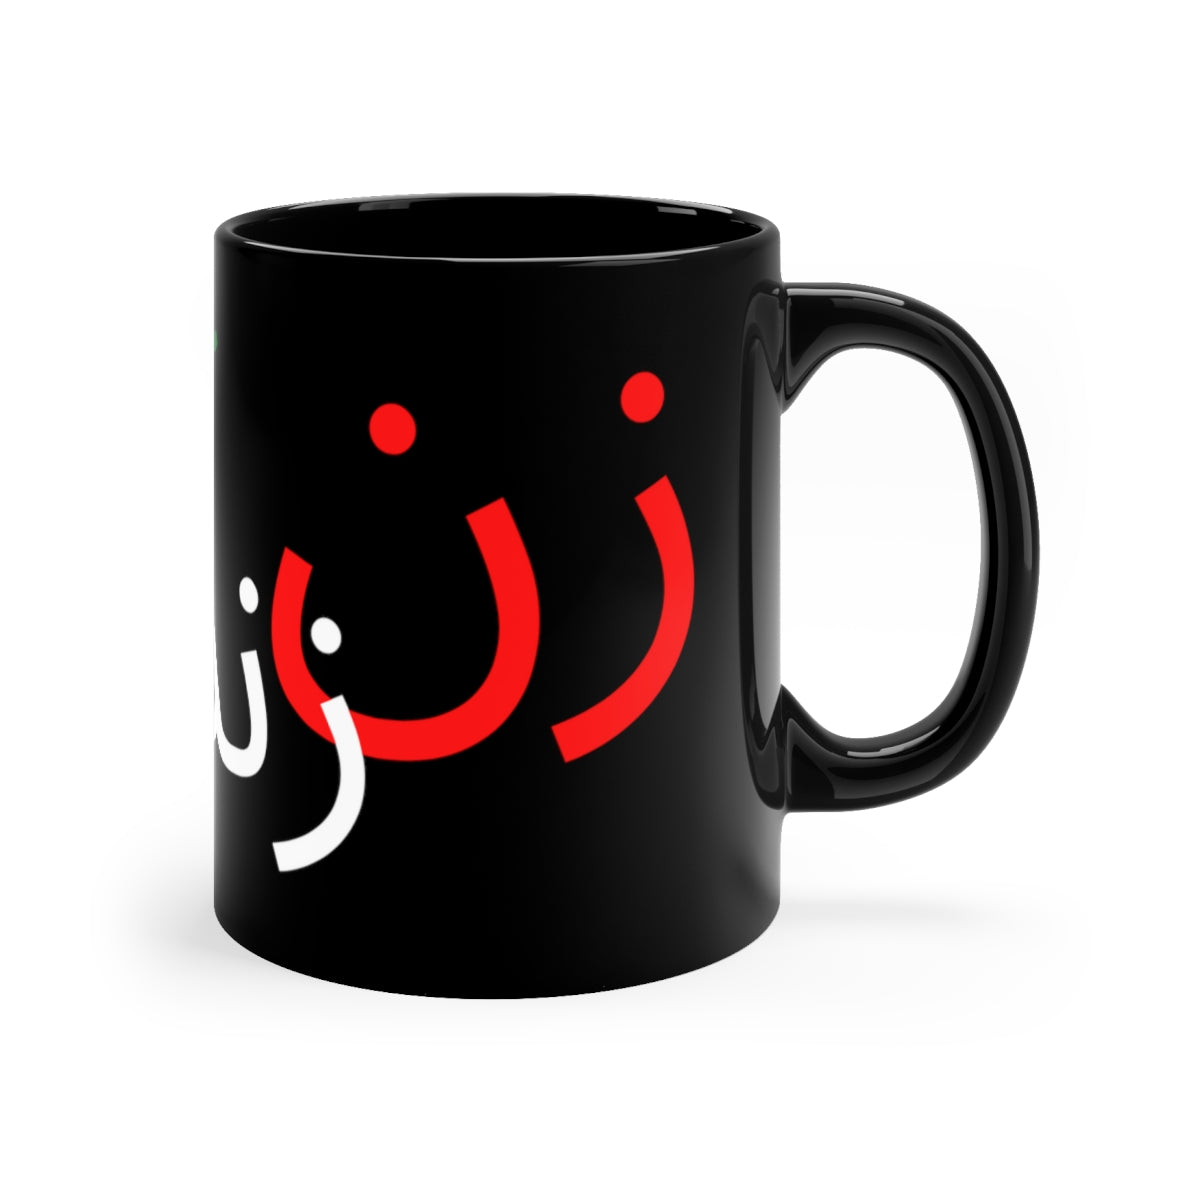 Zan Zendegi Azadi - 11oz Black Mug - MahsaAmini - Free Iran - Iran revolution